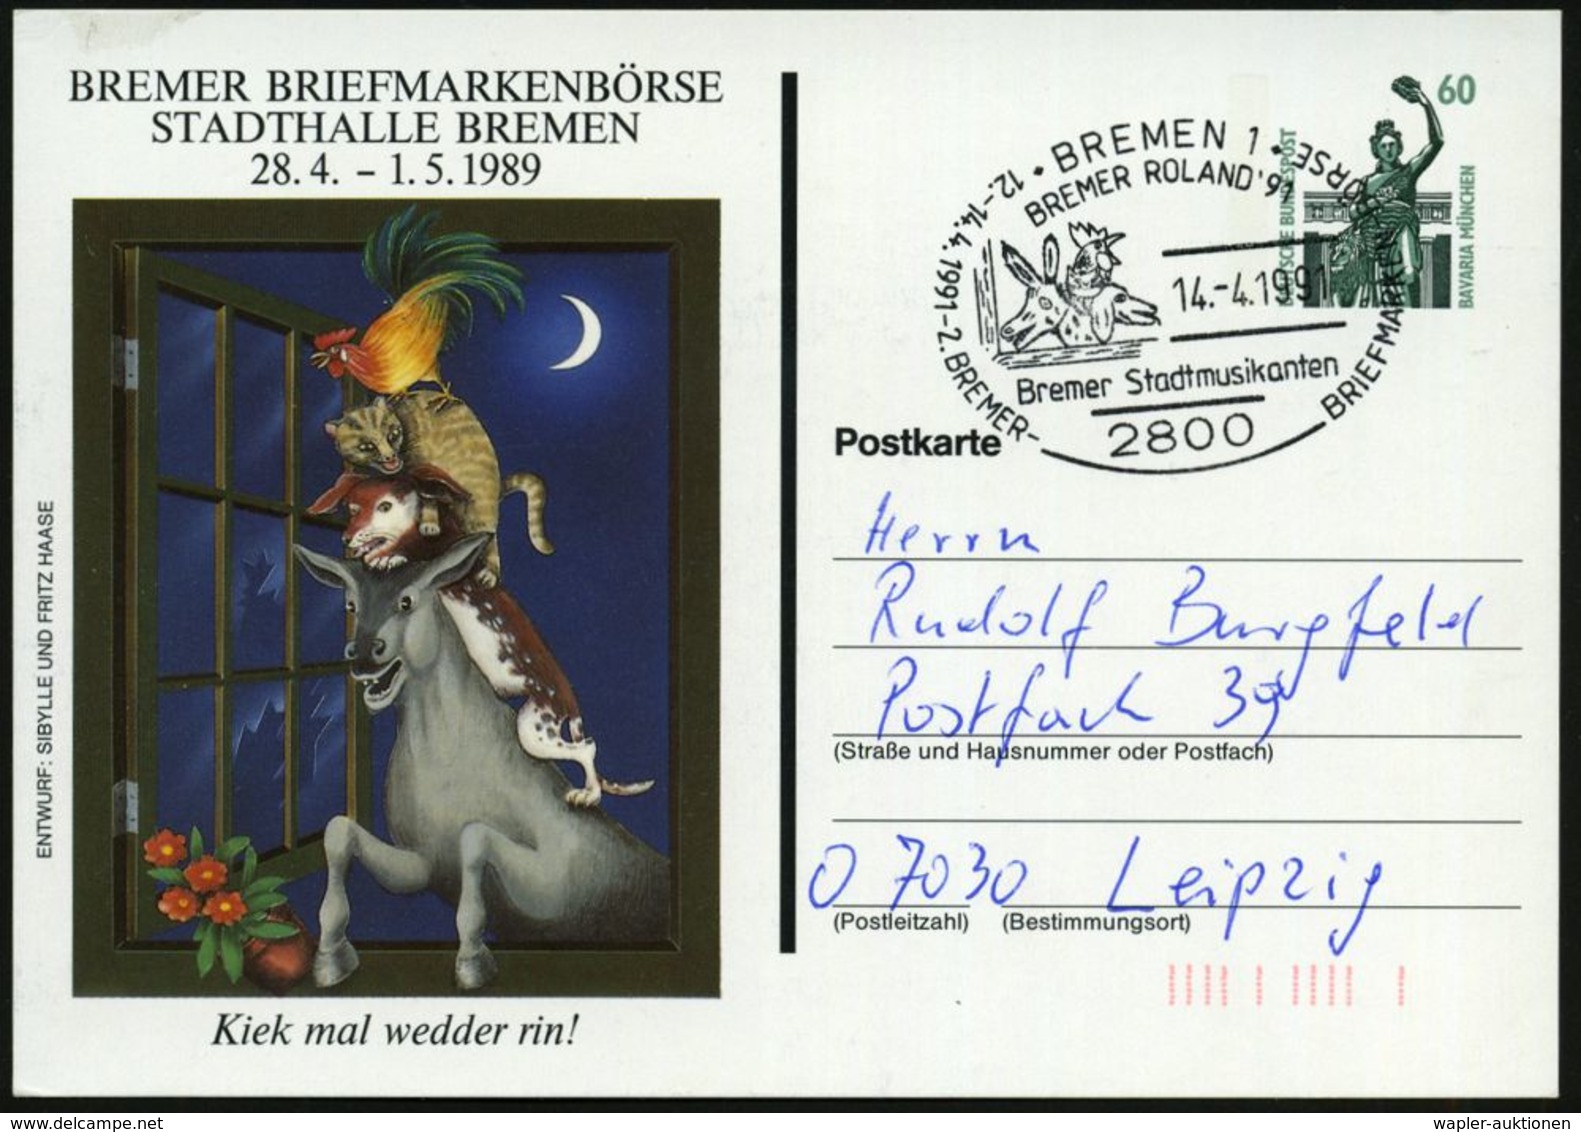 MÄRCHEN / SAGEN / FABELWESEN : 2800 BREMEN 1/ BREMER ROLAND'91/ Bremer Stadtmusikanten.. 1991 (14.4.) SSt = "Bremer Stad - Writers